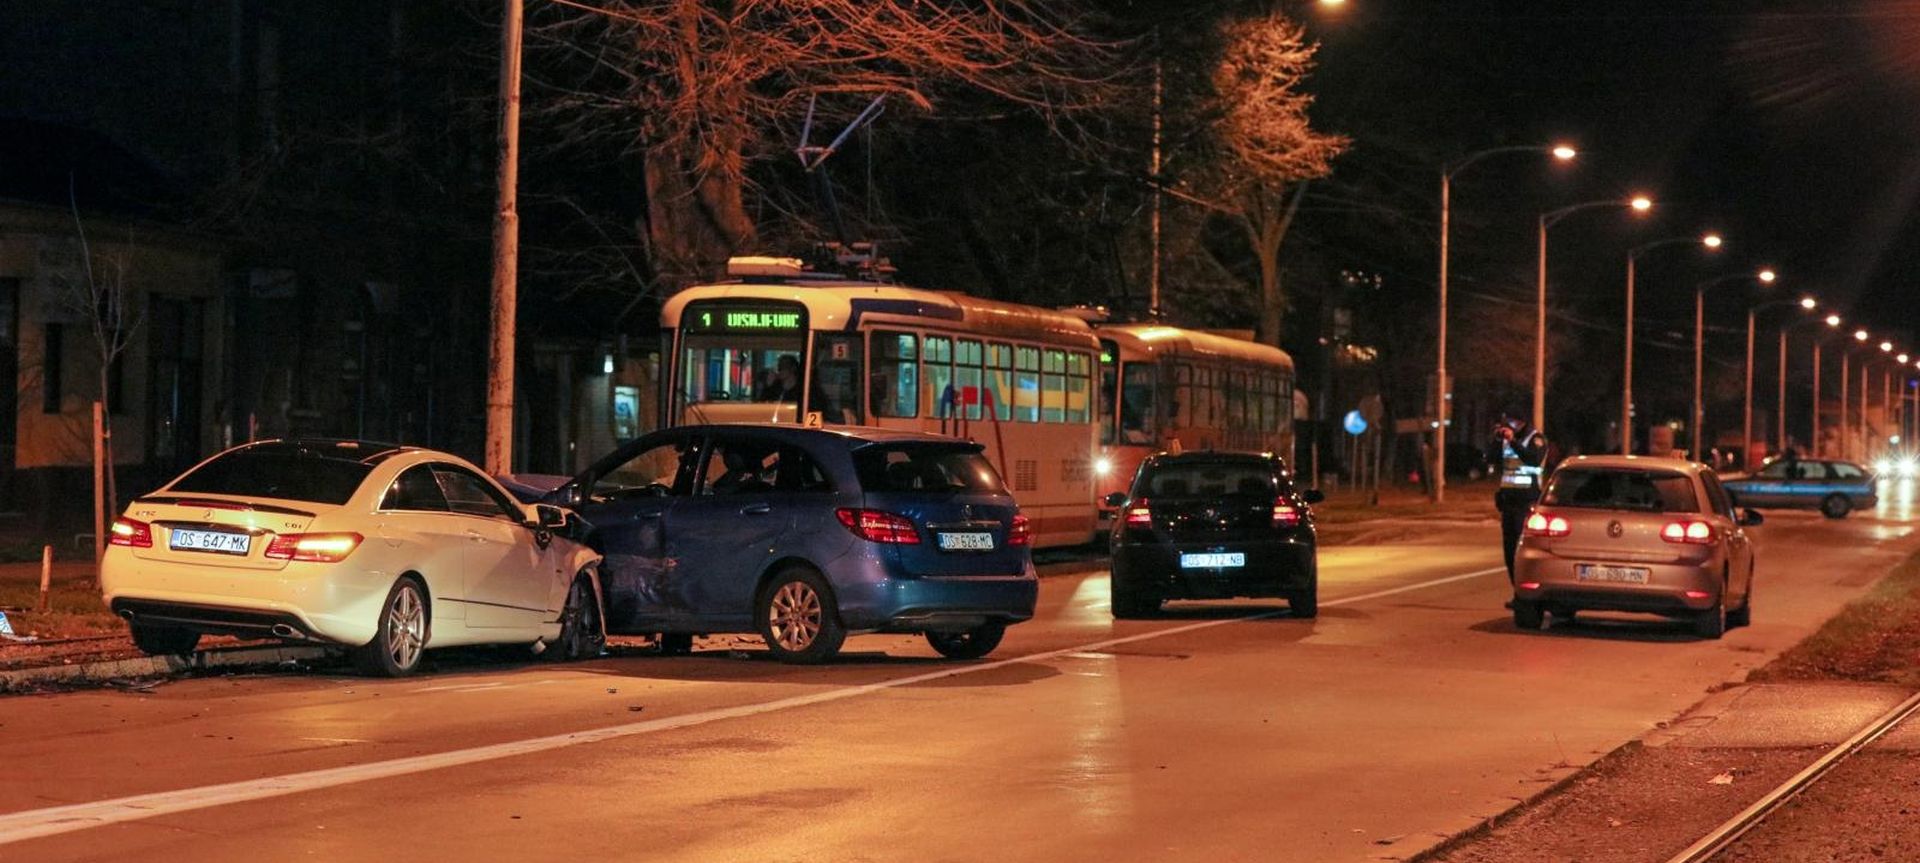 28.12.2019., Osijek - Prometna nesreca u Osijeku u Ulici Matije Gupca u kojoj je sudjelovalo vise vozila. Ocevid je u tijeku.
  Photo: Dubravka Petric/PIXSELL